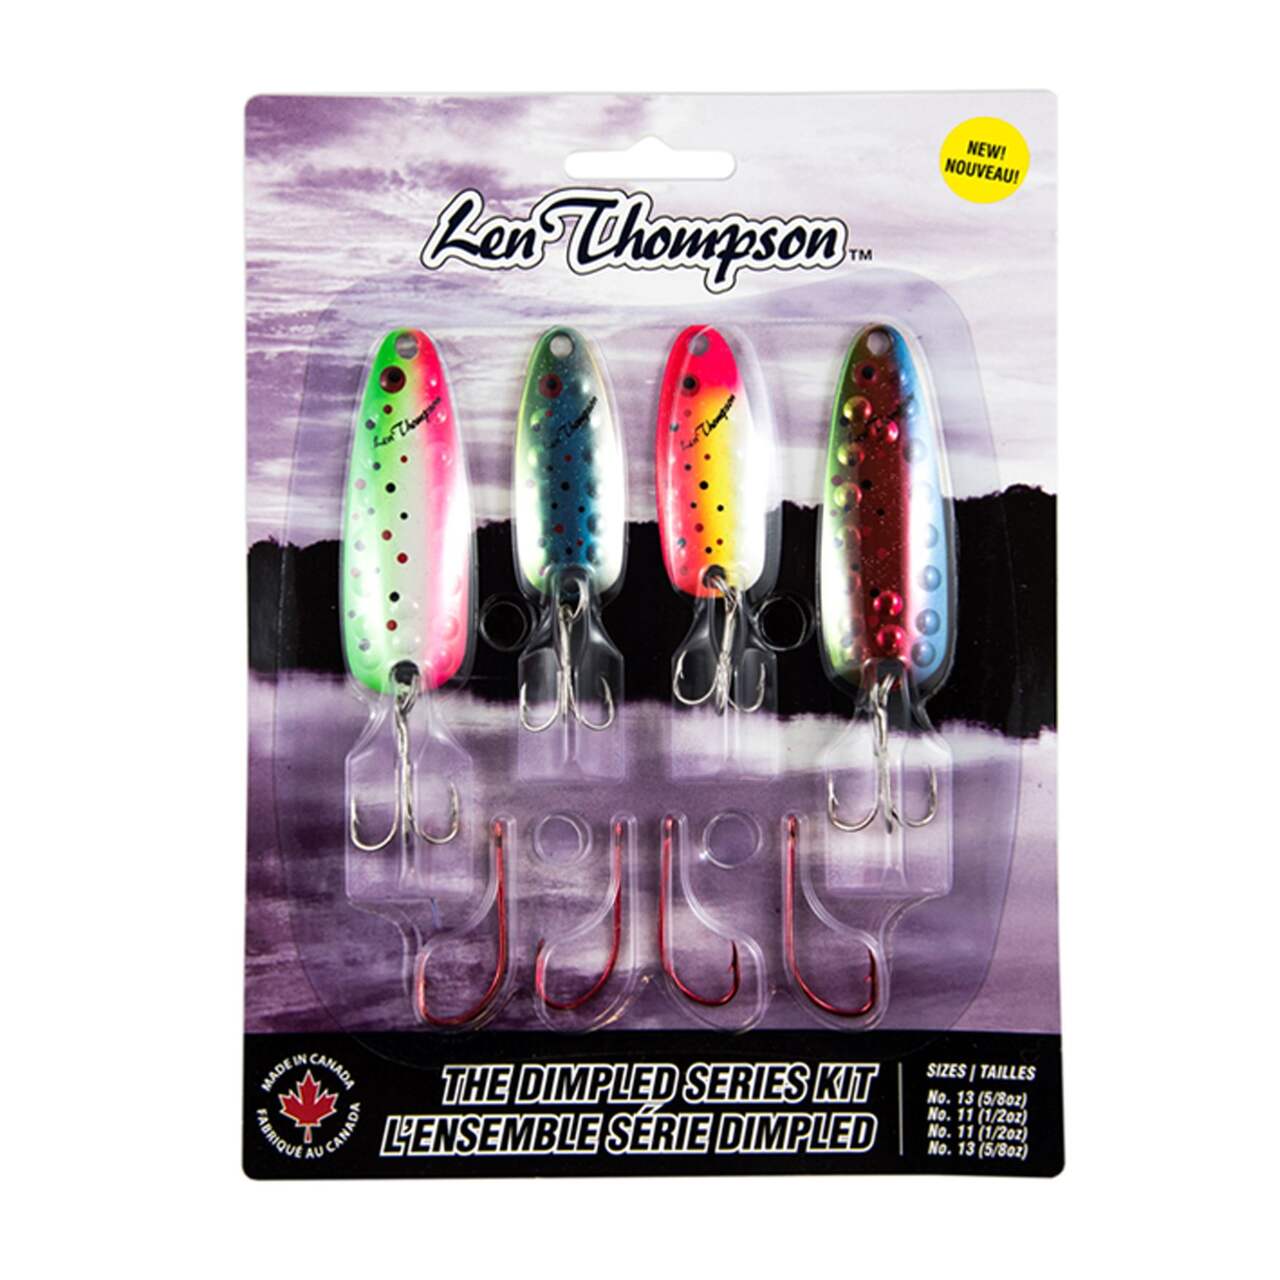 Len Thompson Dimpled Fishing Lure Kit